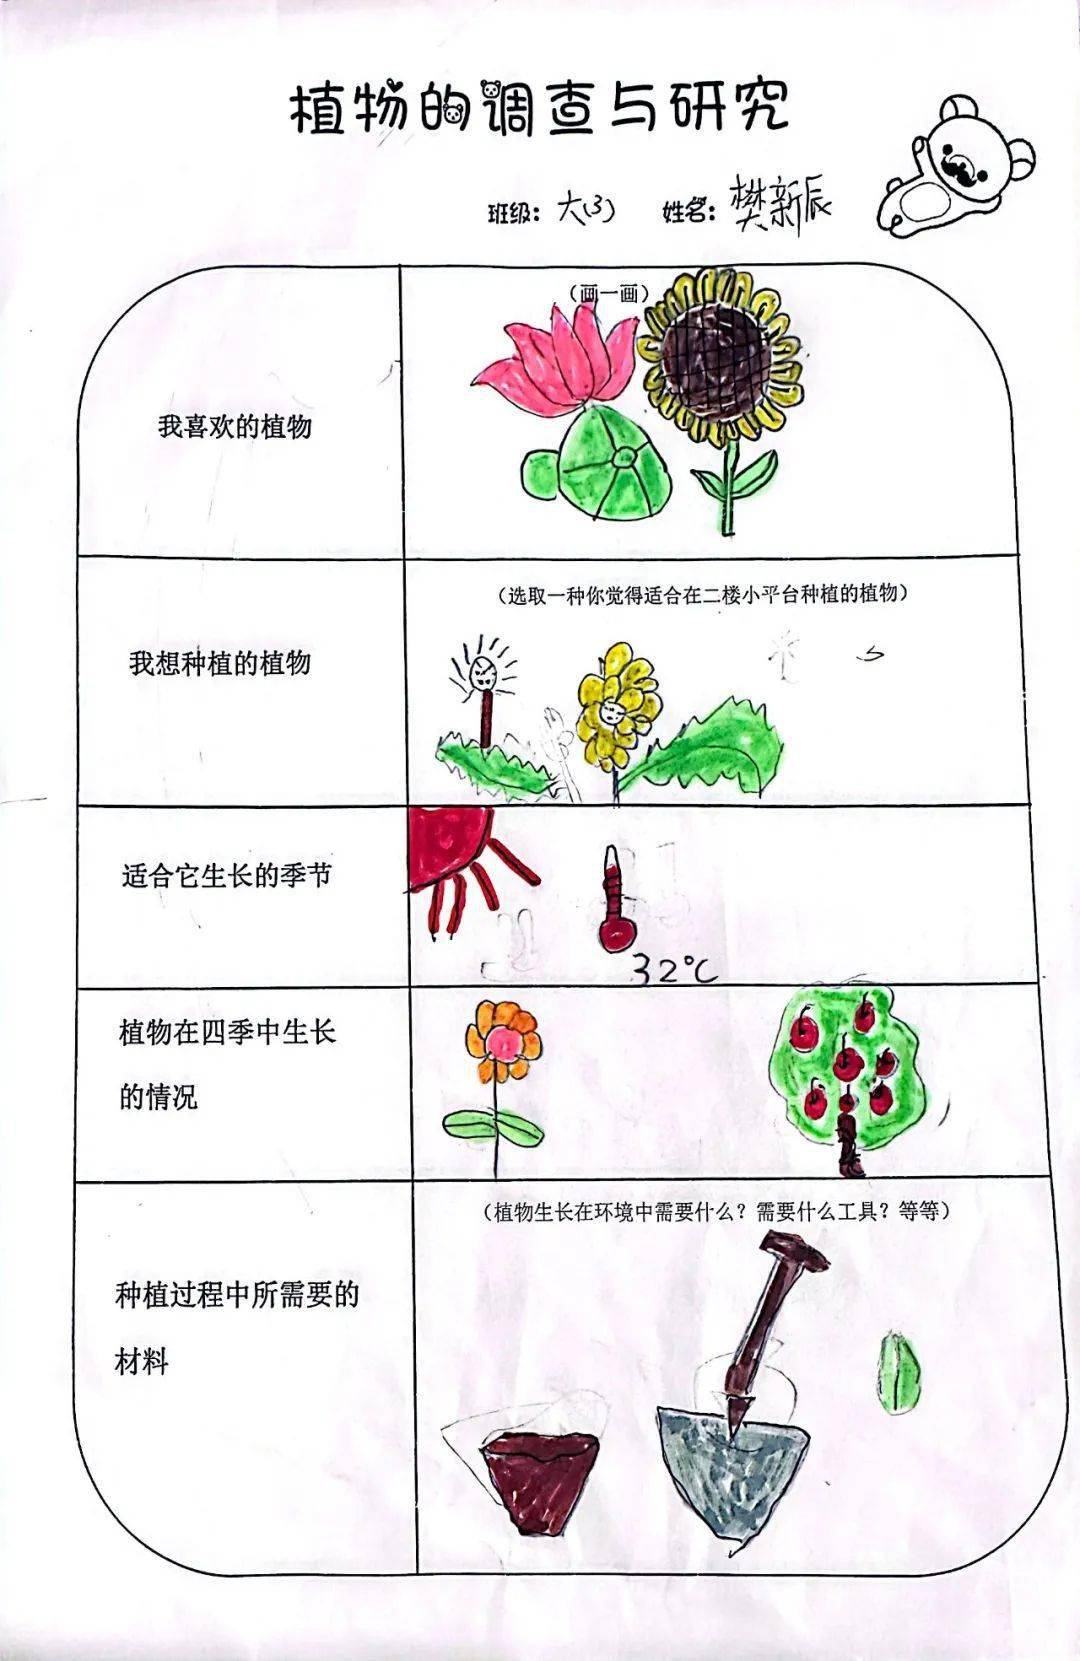 有用的植物调查表图片